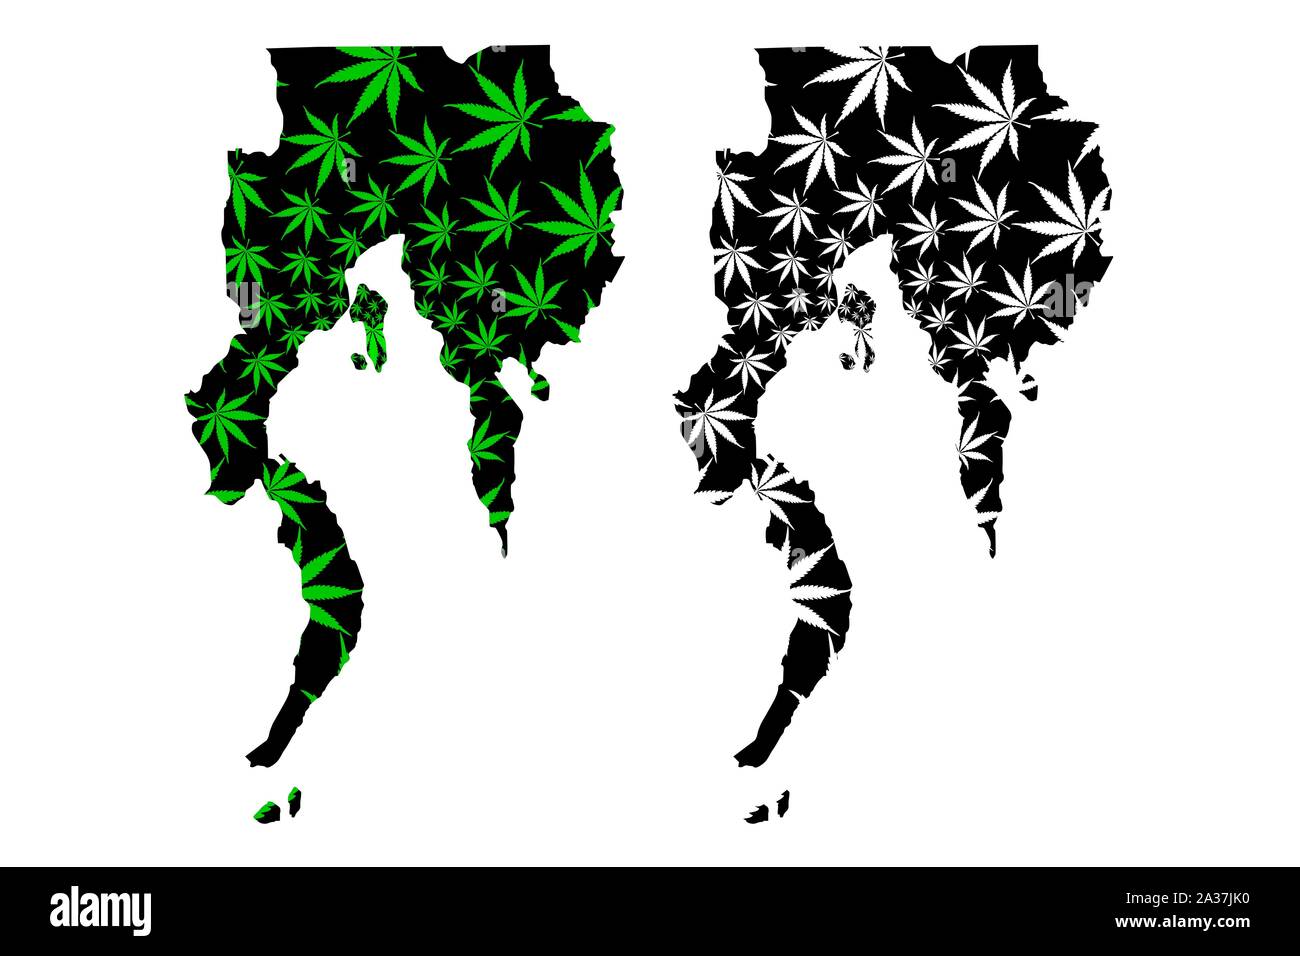 La région de Davao (régions et provinces des Philippines) la carte est conçue de feuilles de cannabis vert et noir, le sud de Mindanao (région XI) carte de marij Illustration de Vecteur